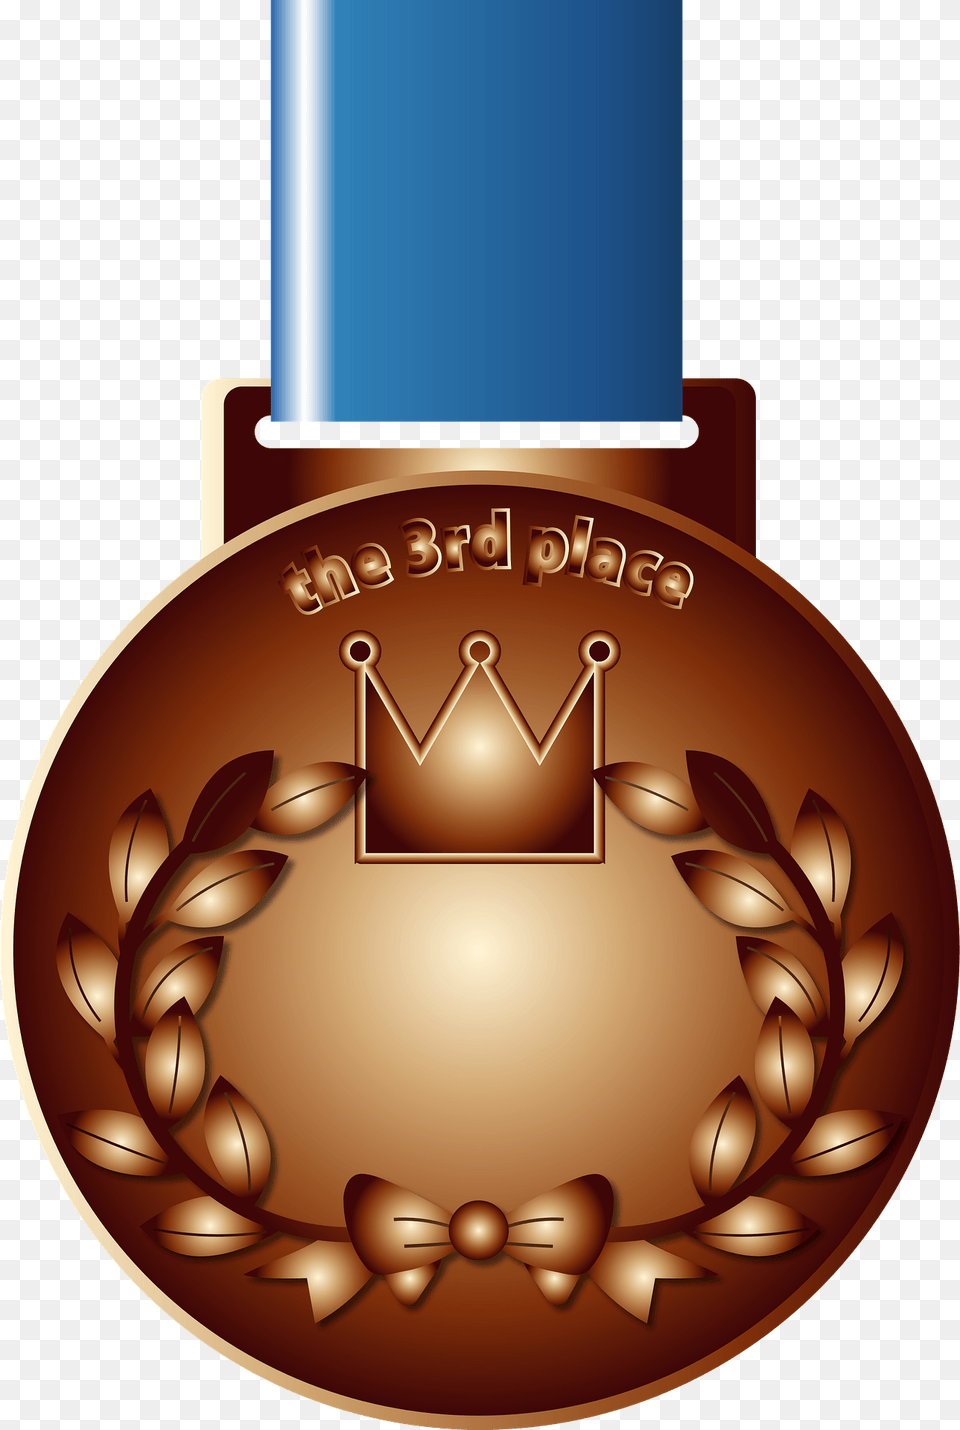 Bronze Medal Clipart, Gold, Gold Medal, Trophy, Chandelier Free Transparent Png